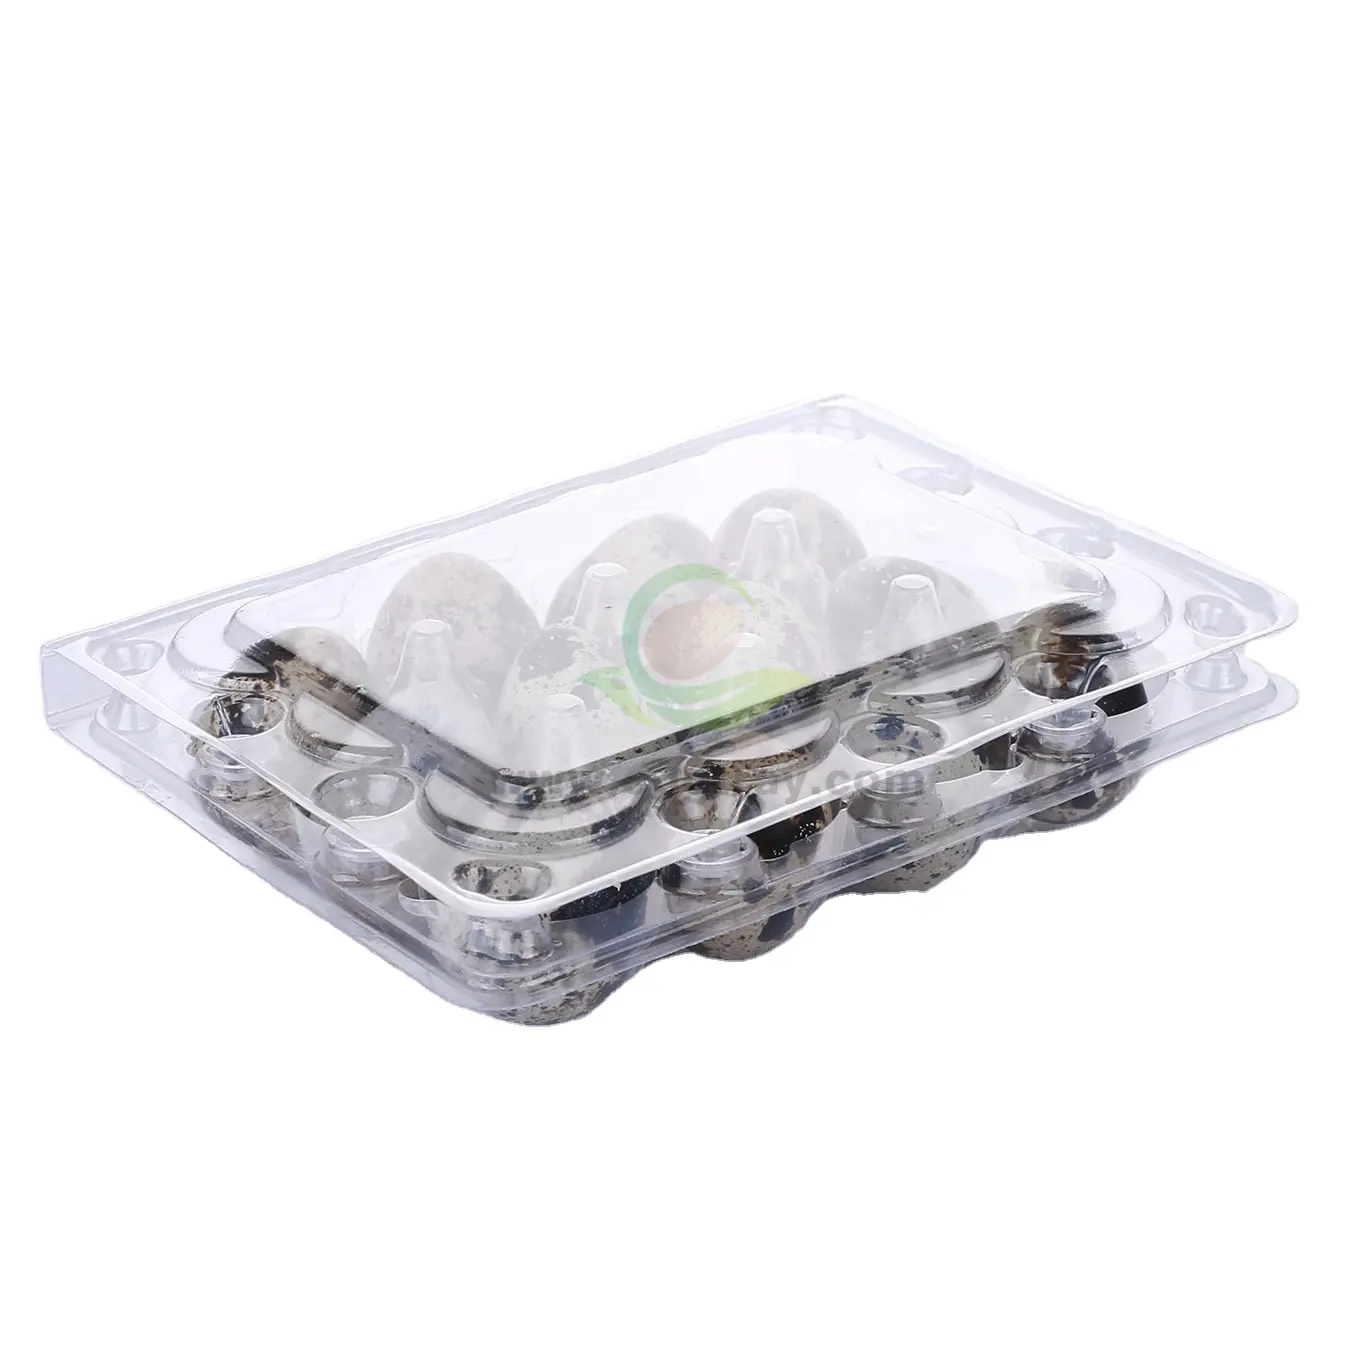 12 Löcher Wachtel Eier ablage Verpackung klar Einweg Kunststoff Wachtel Eier ablage